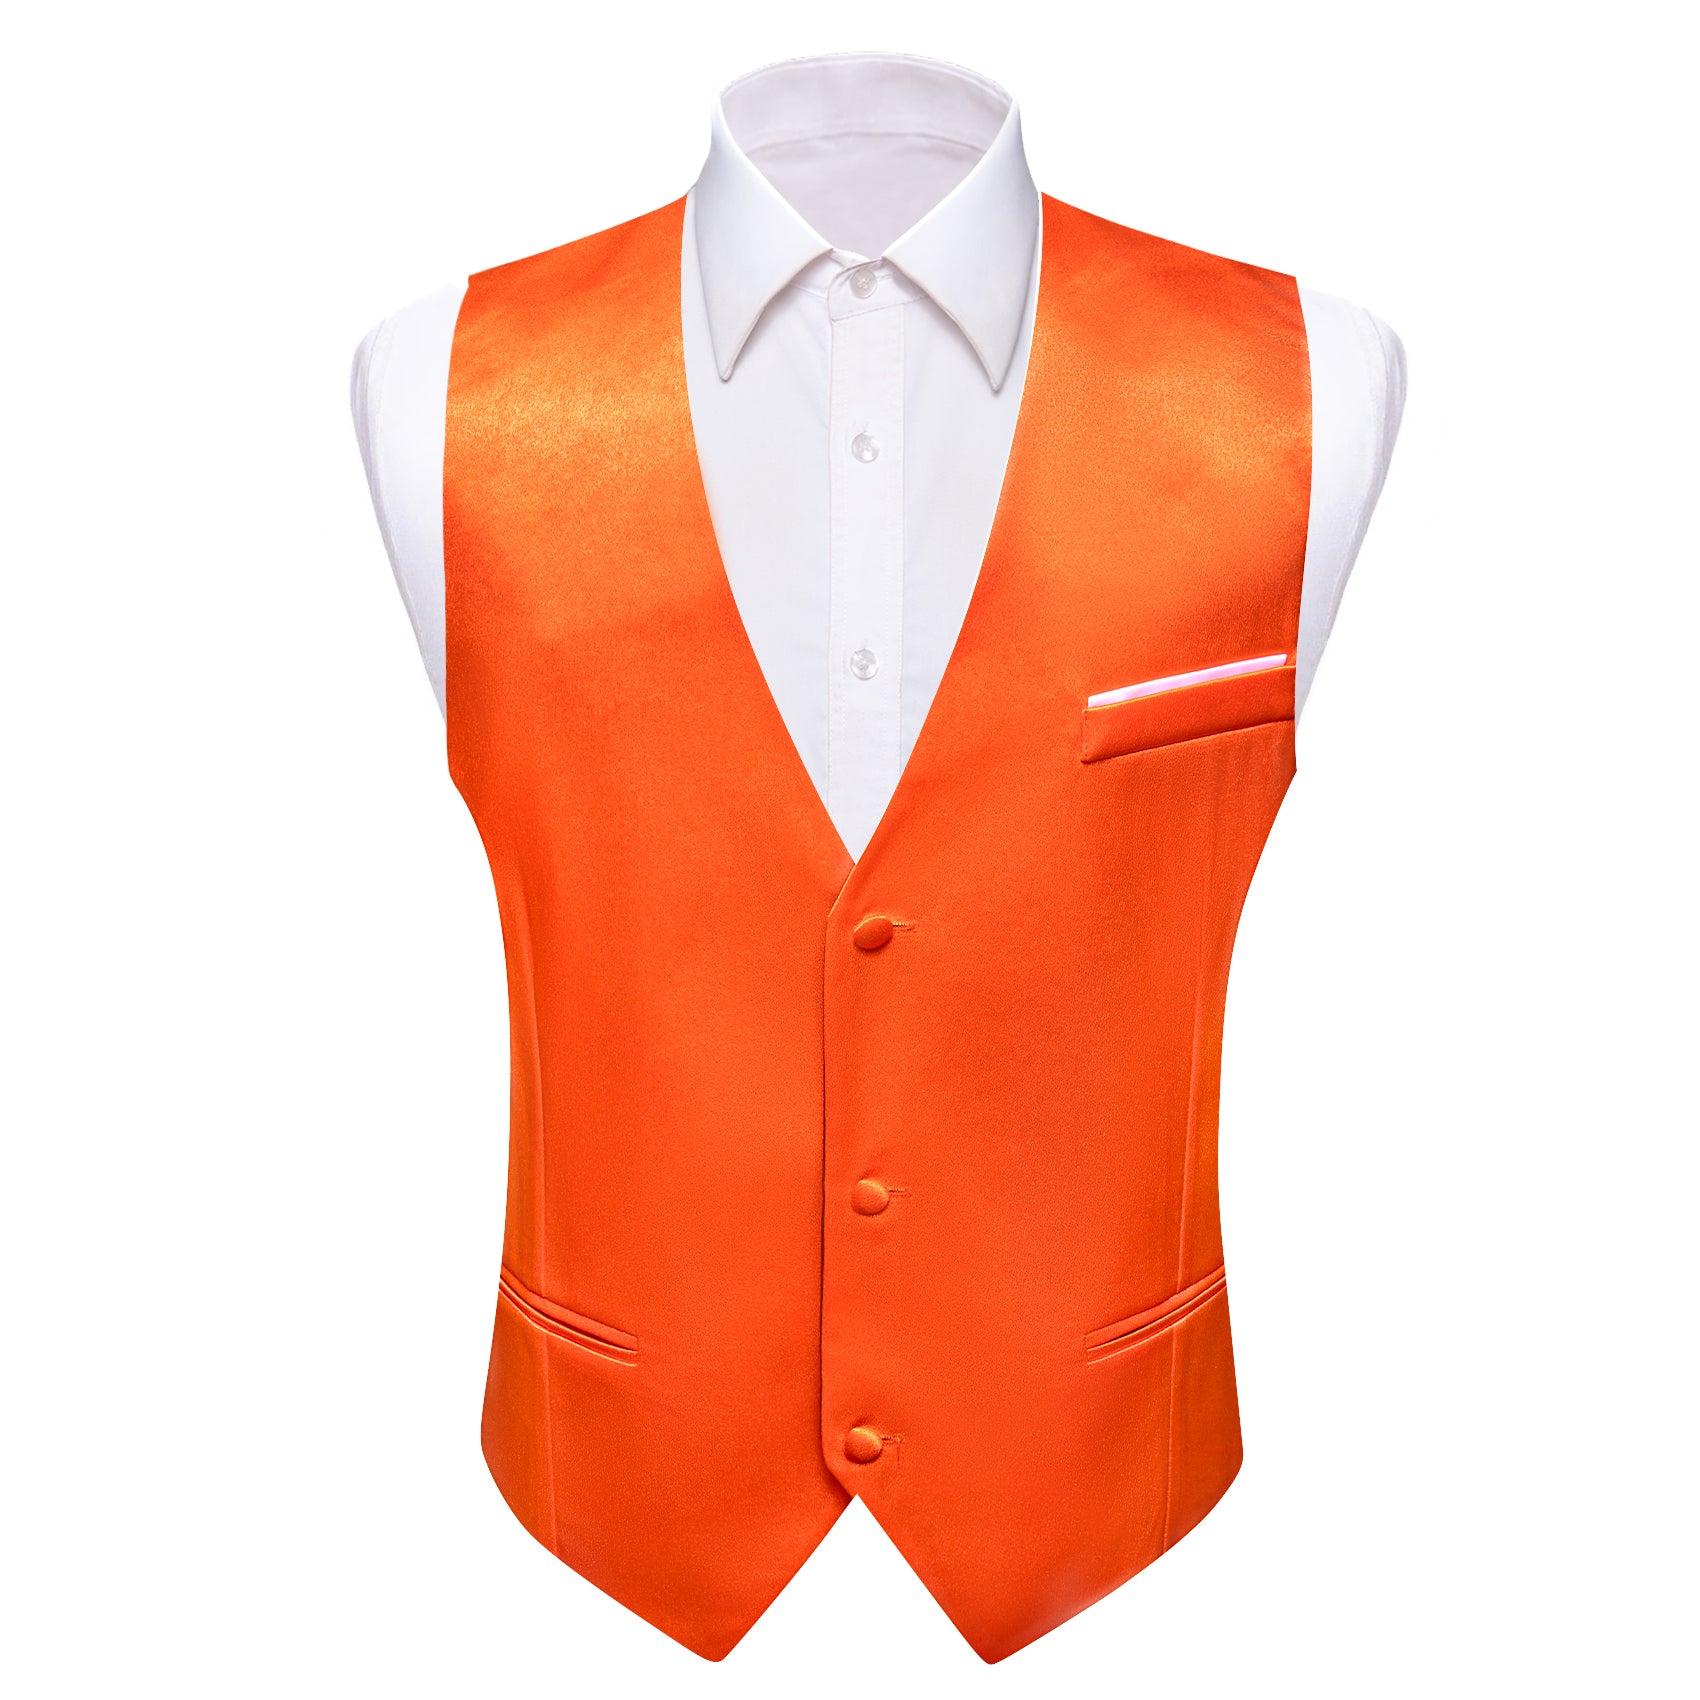 Barry.wang Orange Solid Business Vest Suit